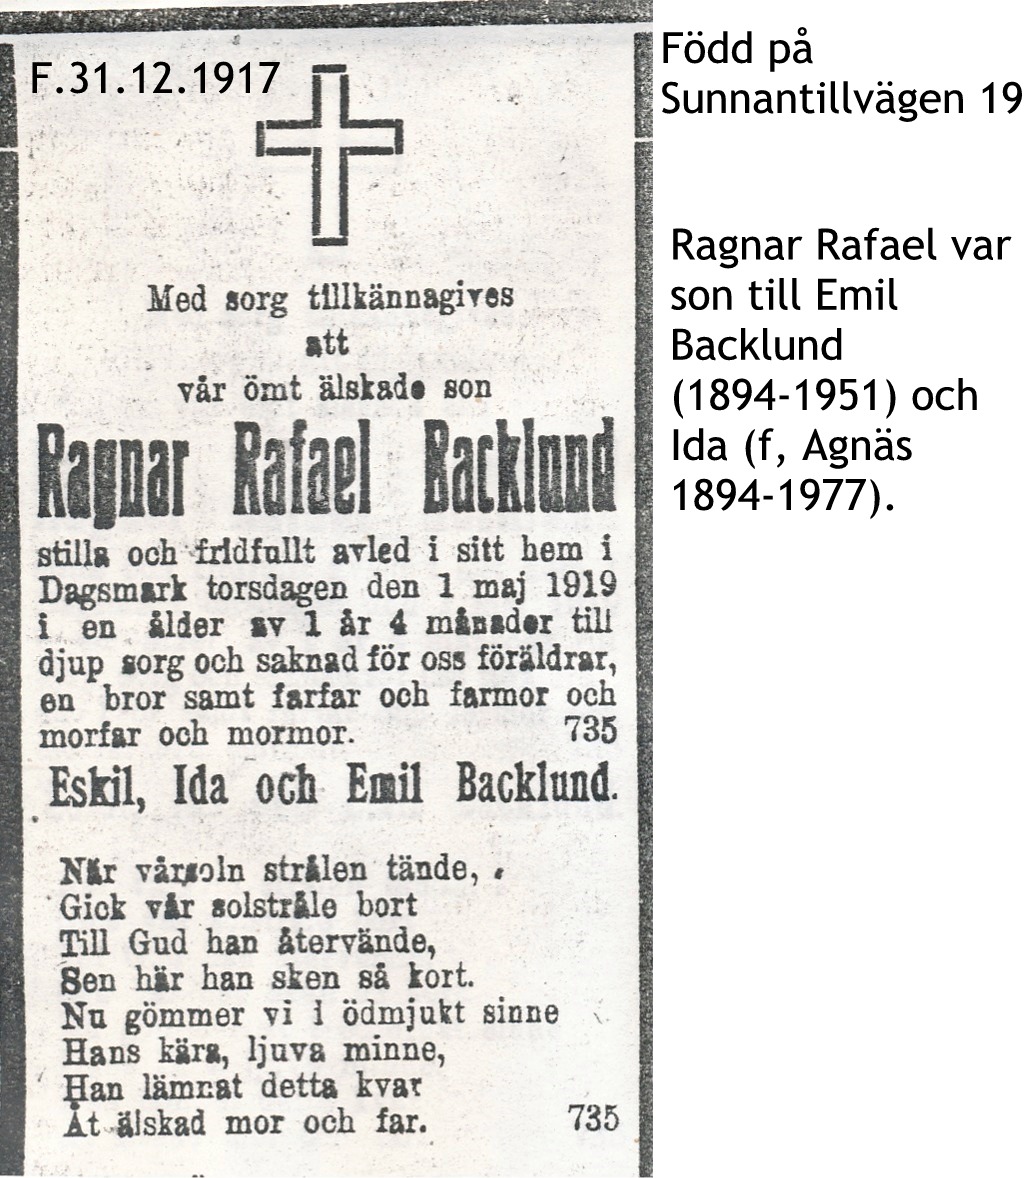 Backlund Ragnar Rafael